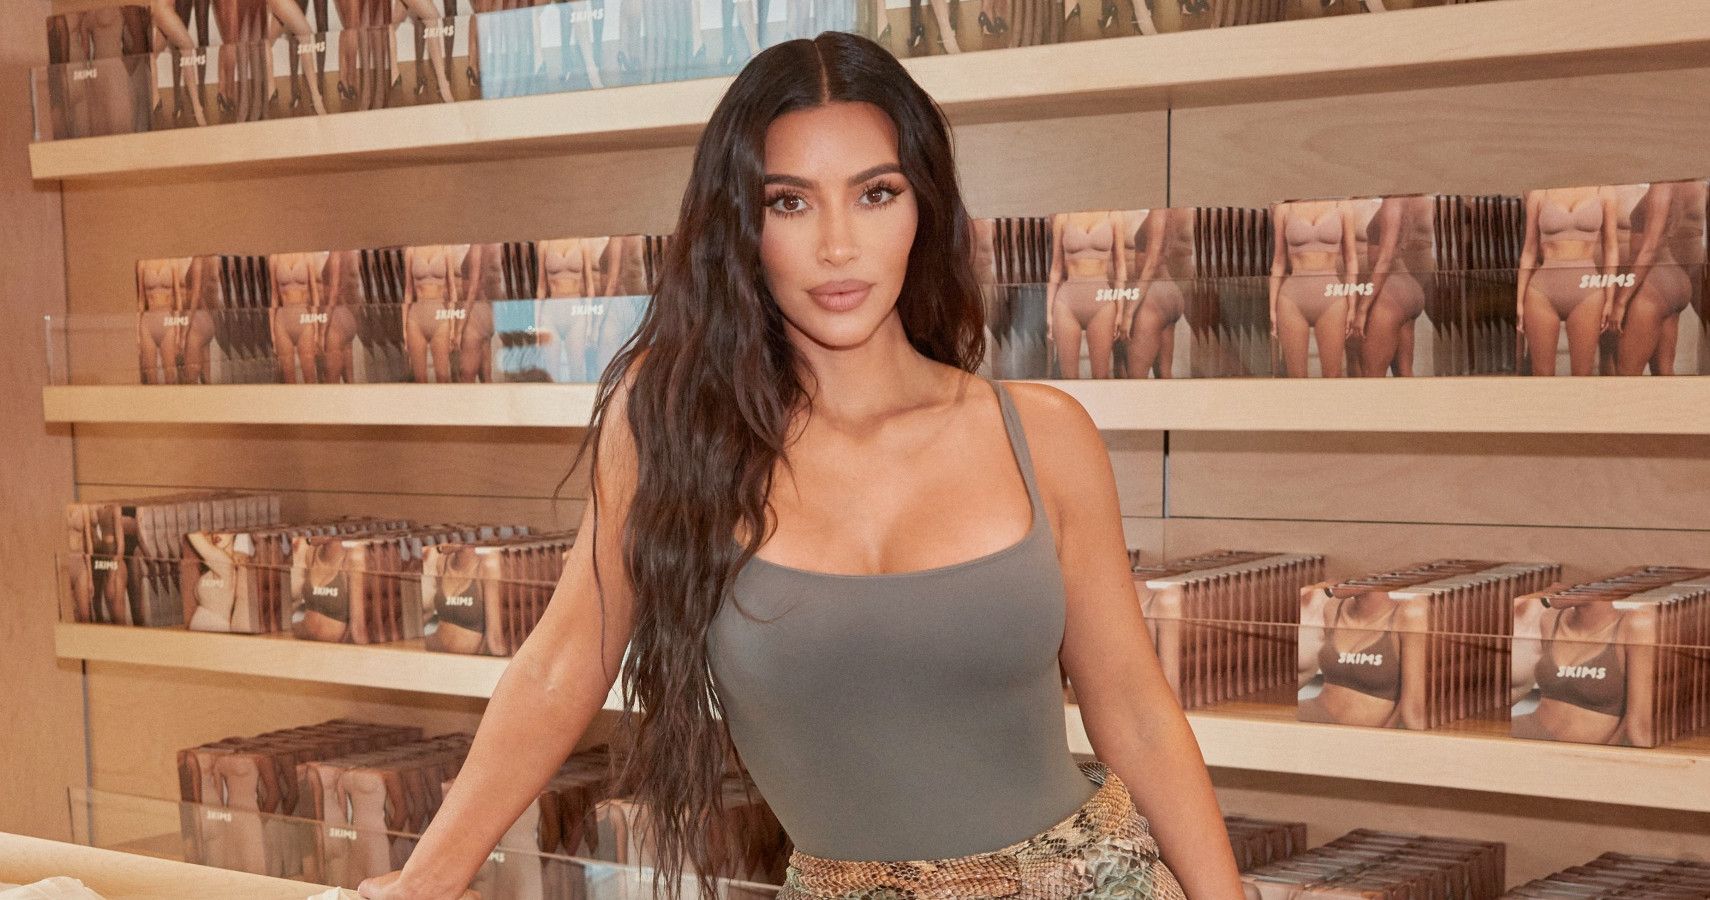 Kim Kardashian prepares to open first Skims stores - Inside Retail Asia